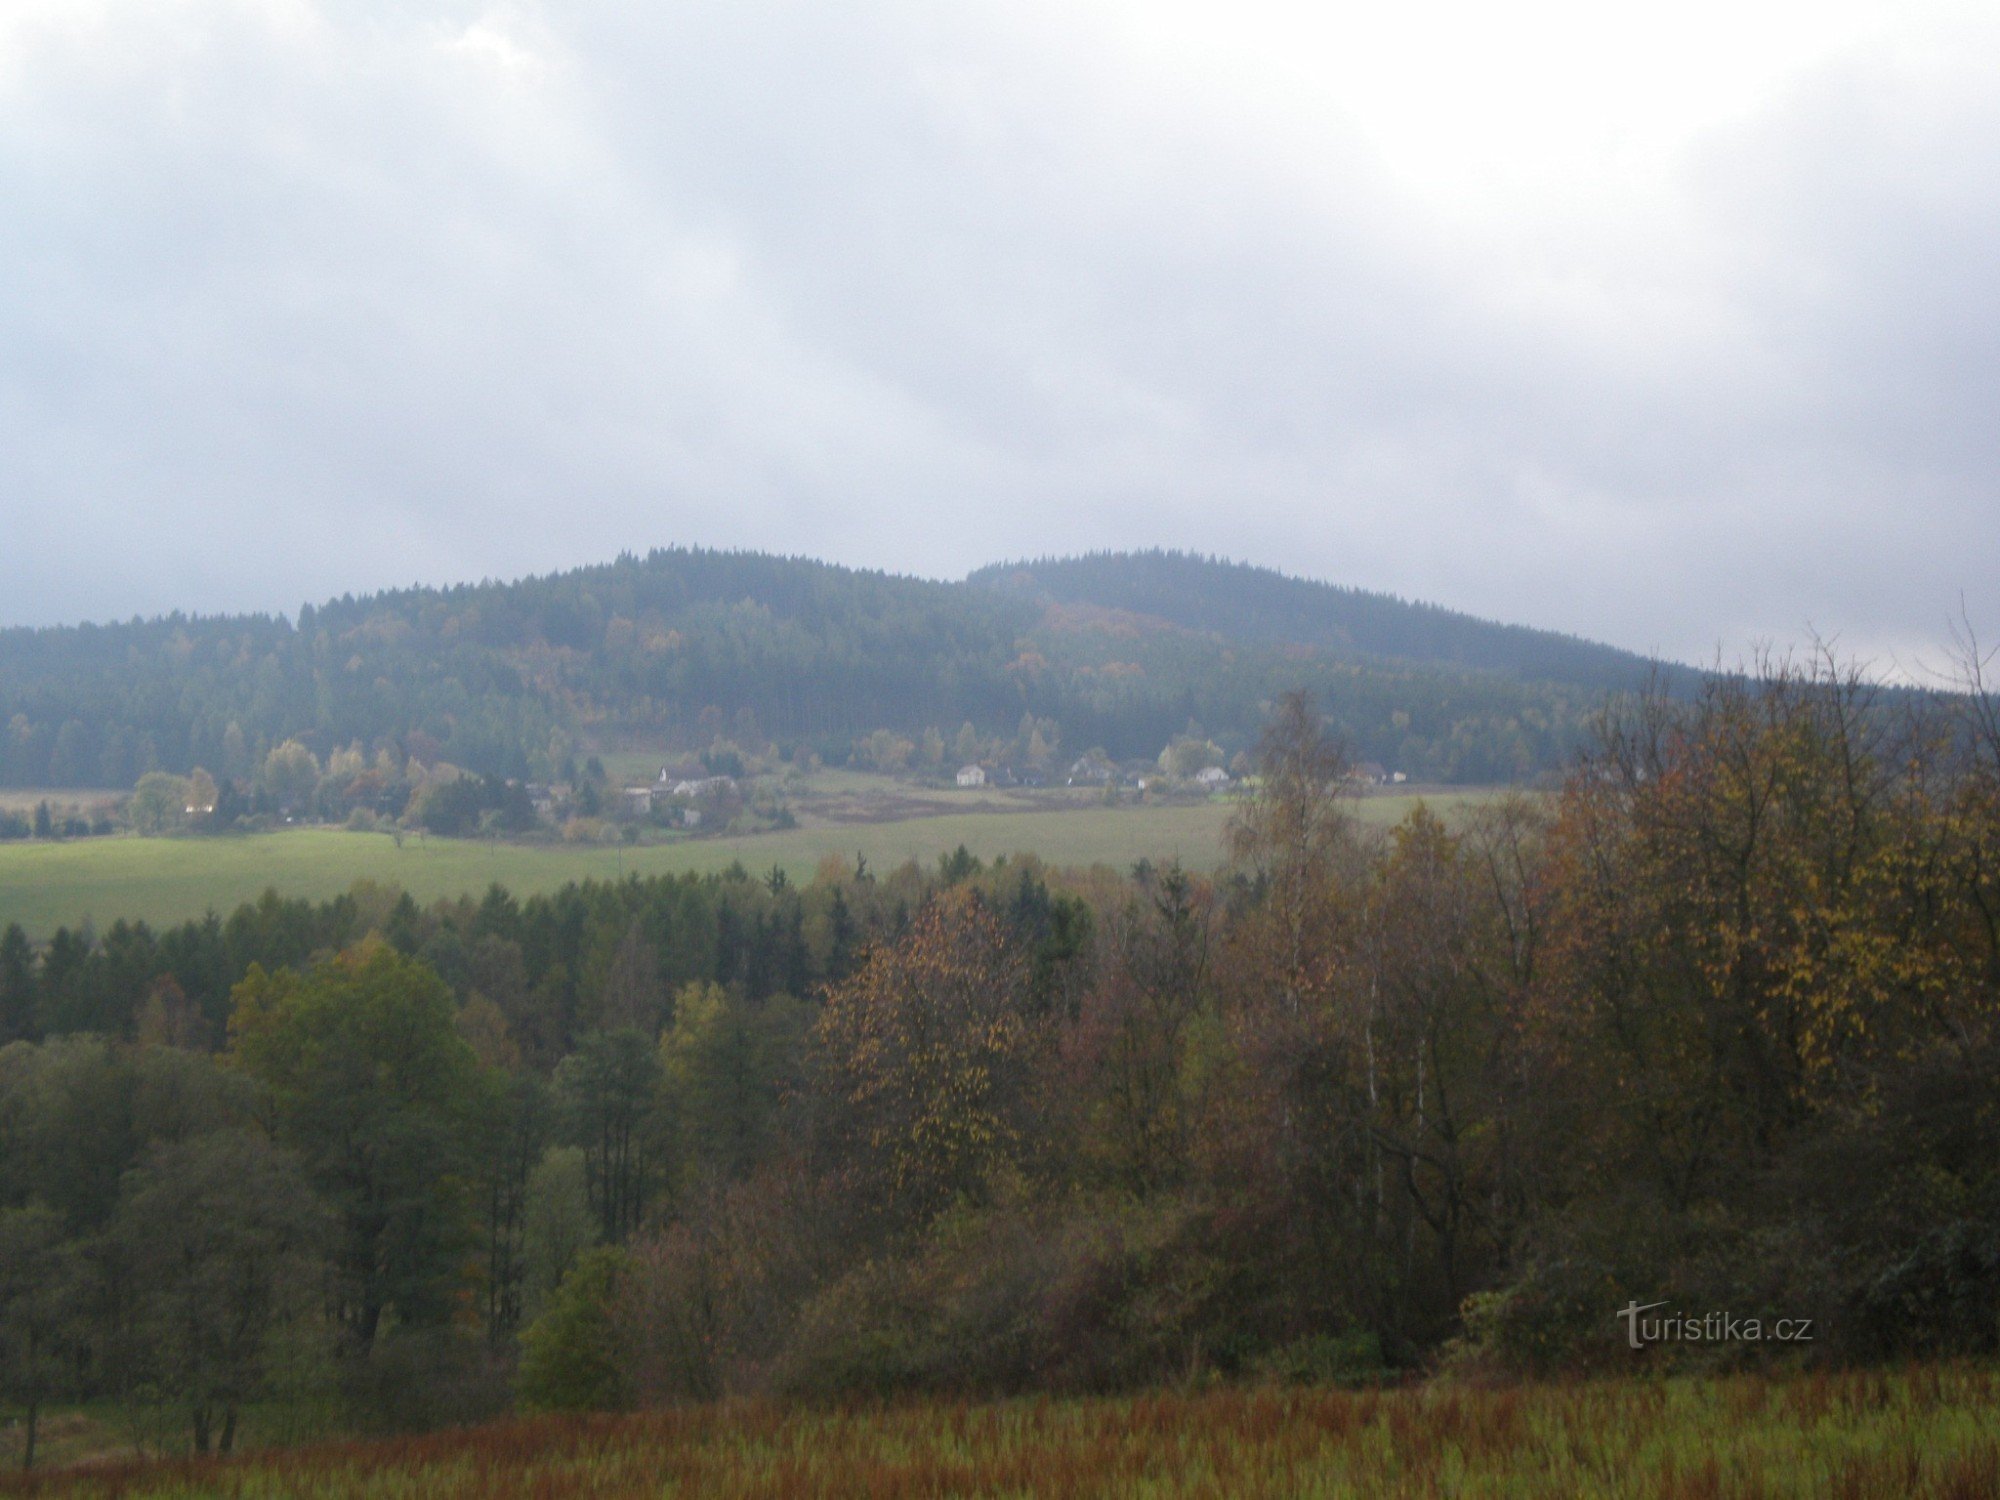 Malá Třemošná (701m) och Třemošná (779m) från norr